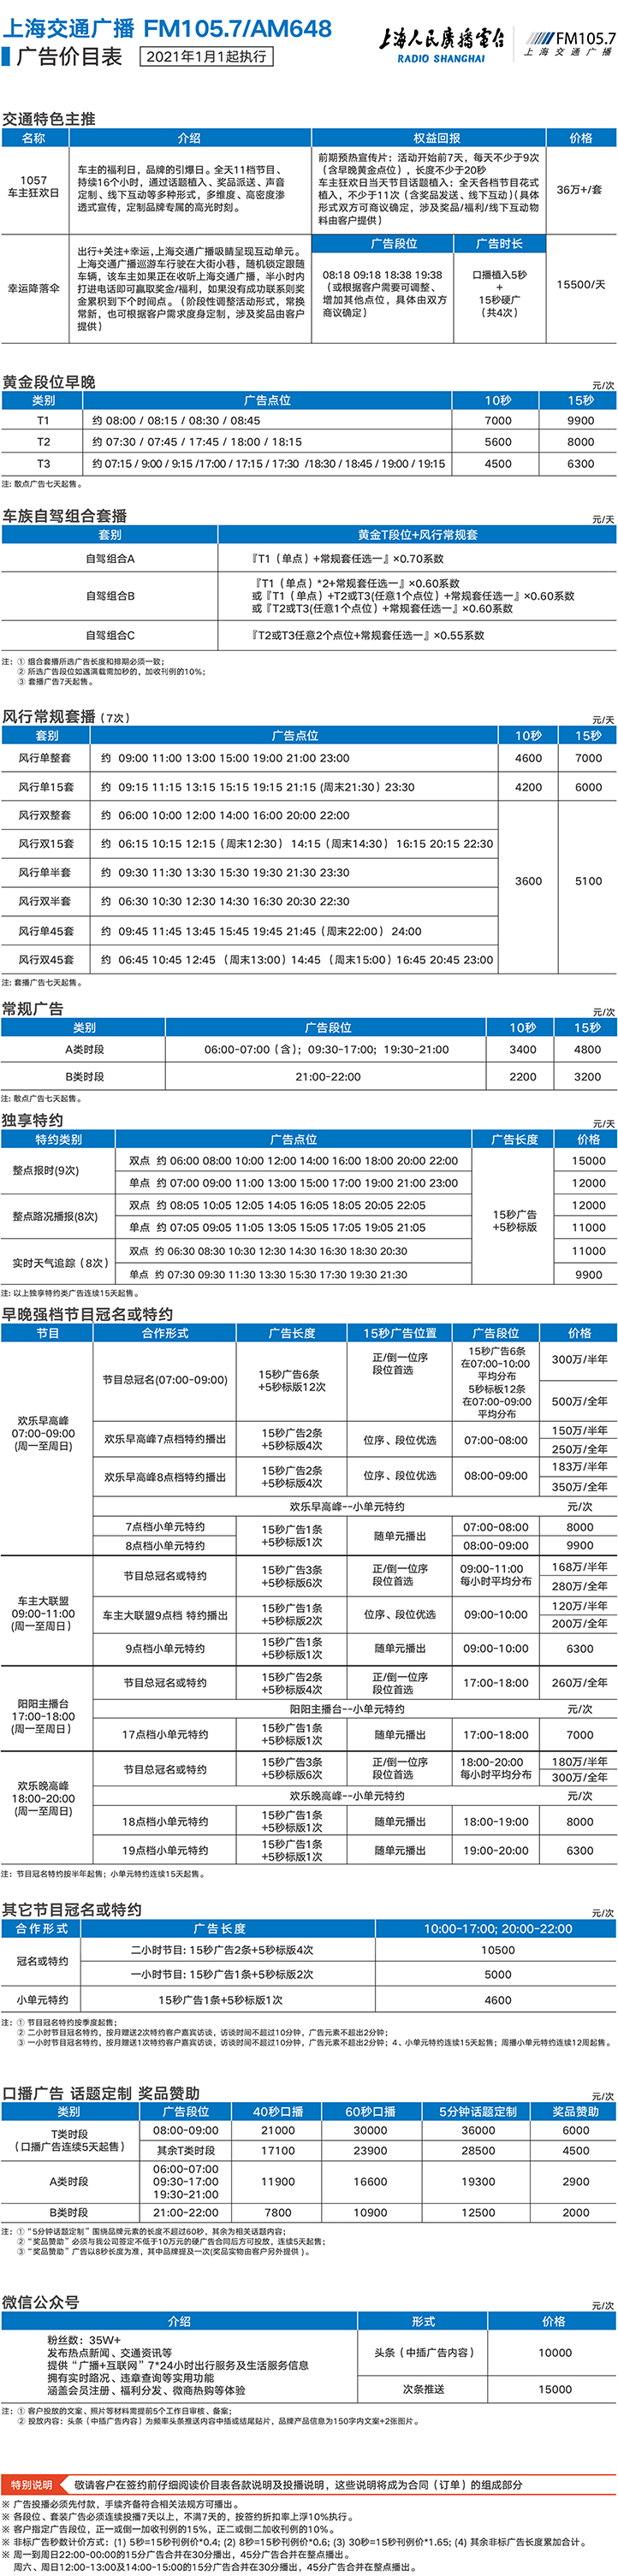 2021上海人民广播电台交通广播FM105.7广告报价表.jpg